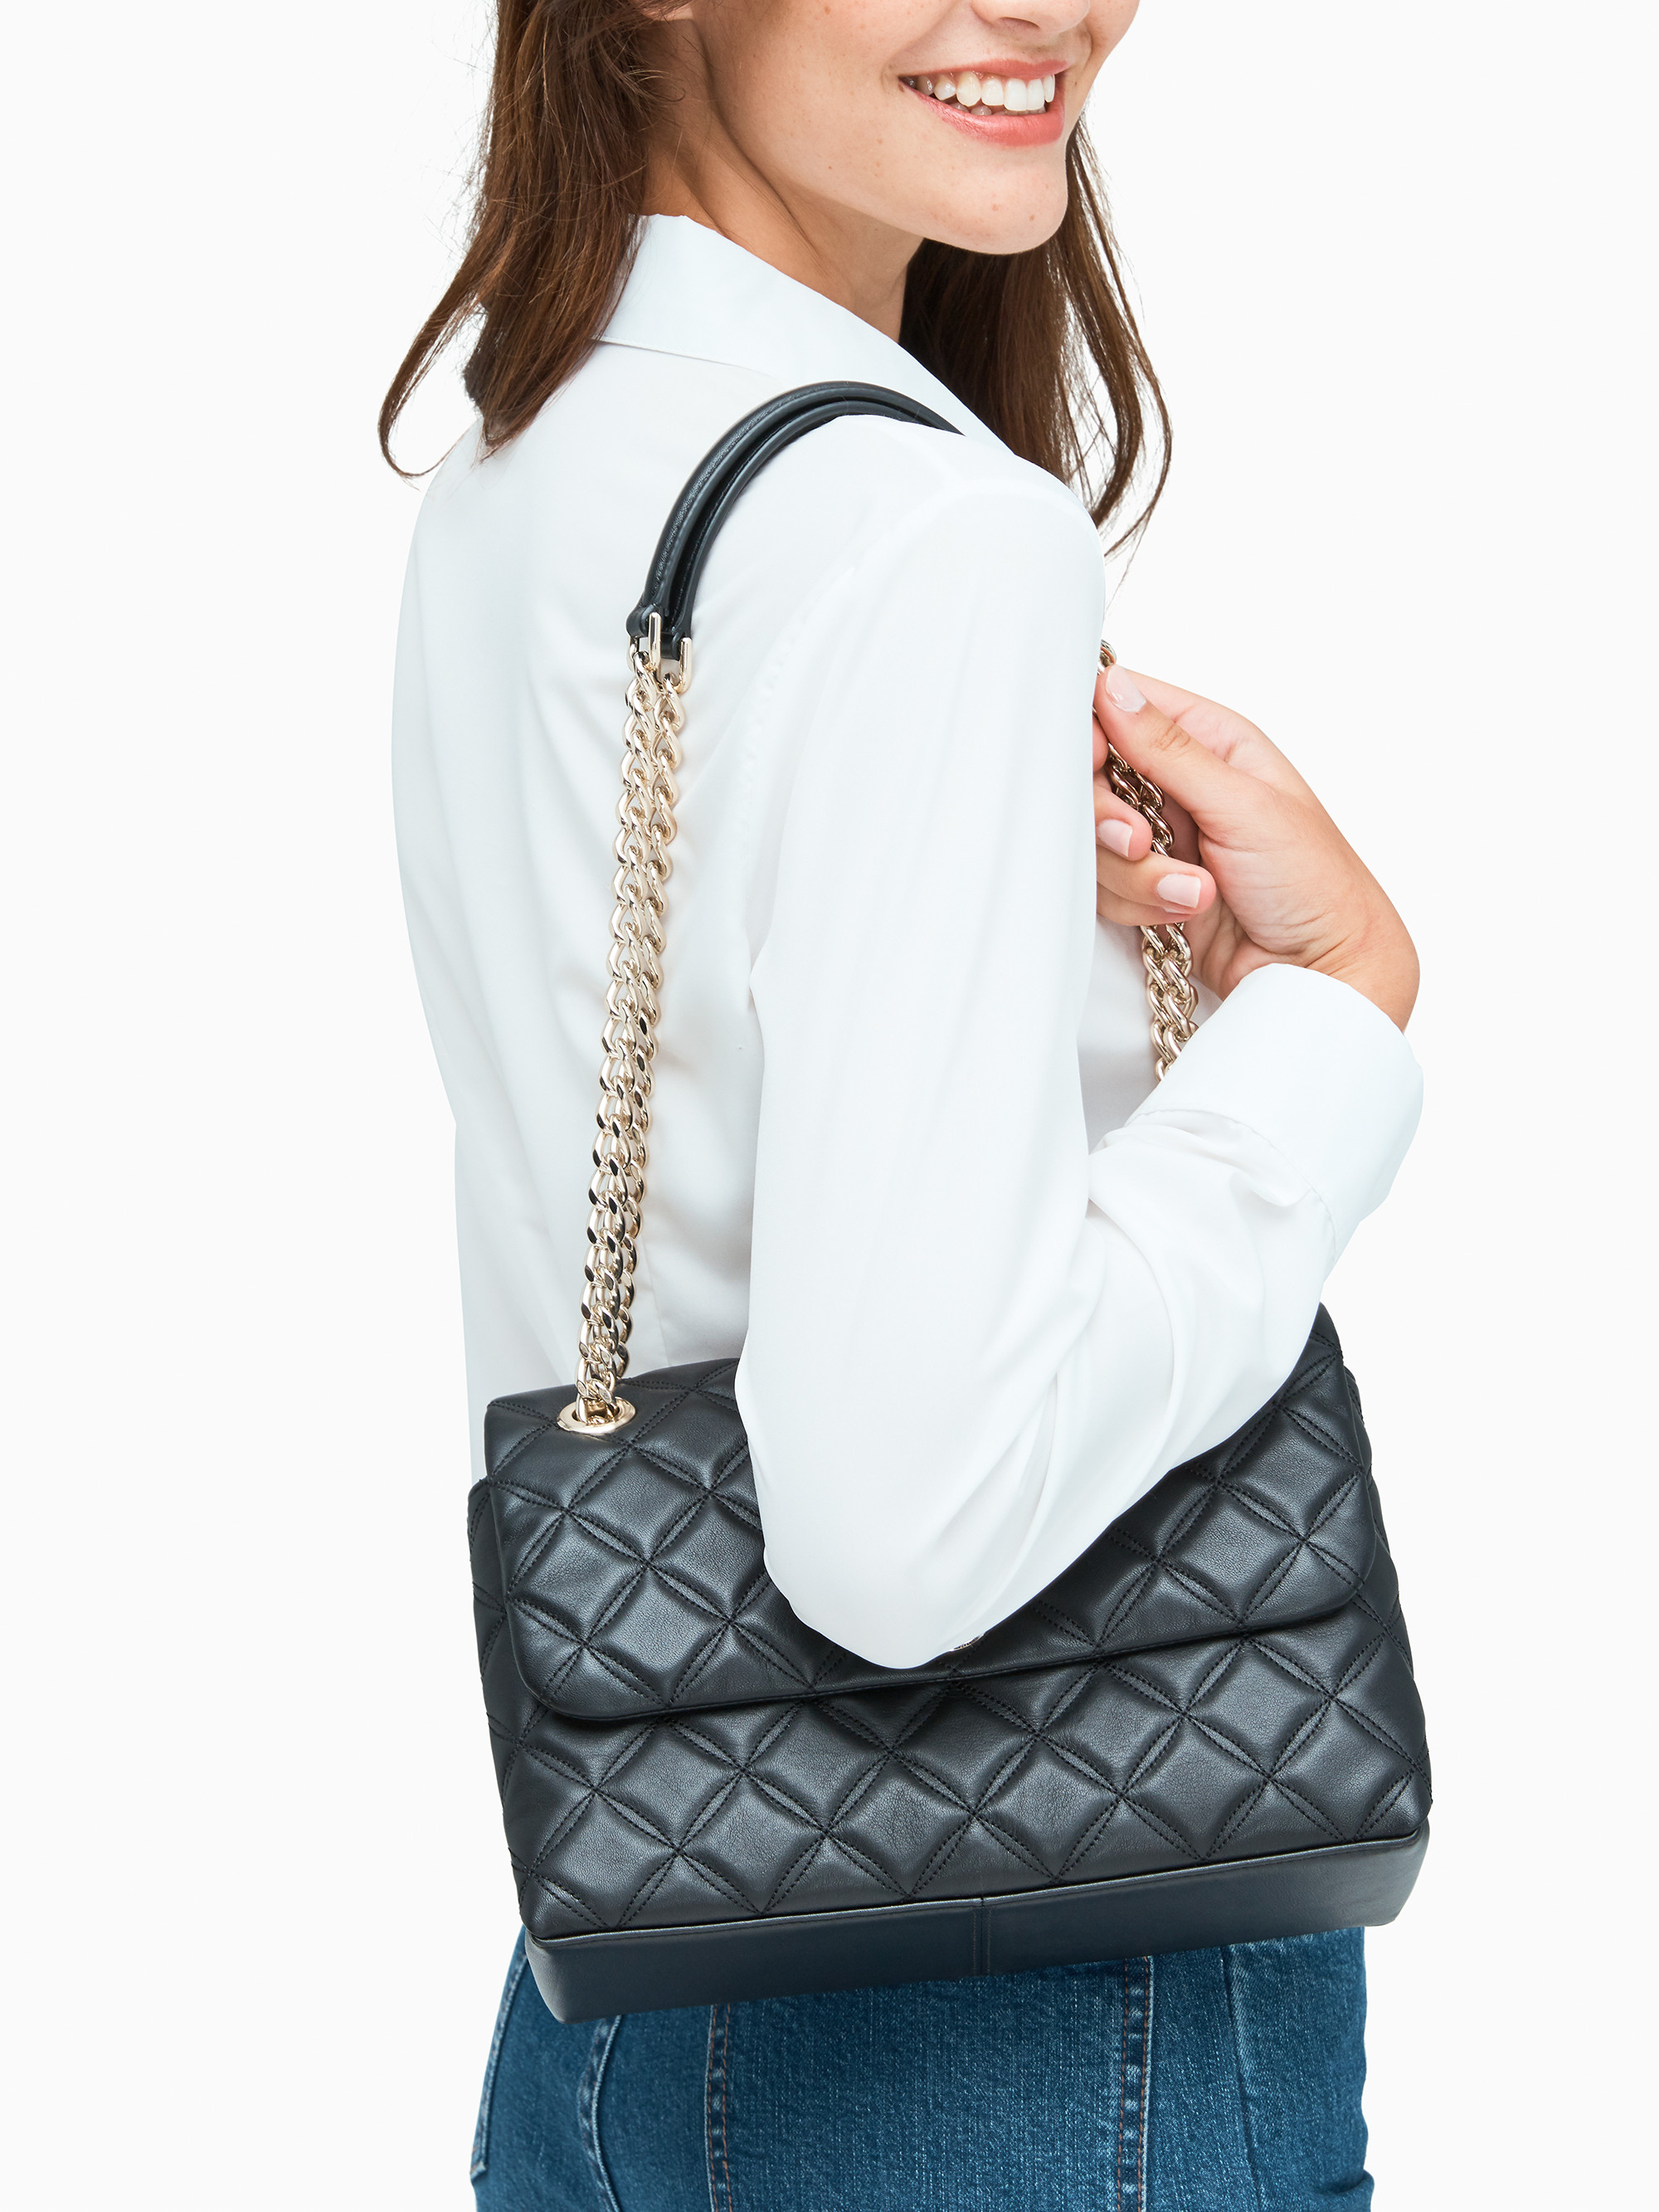 Black Kate Spade shoulder bag for everyday wear